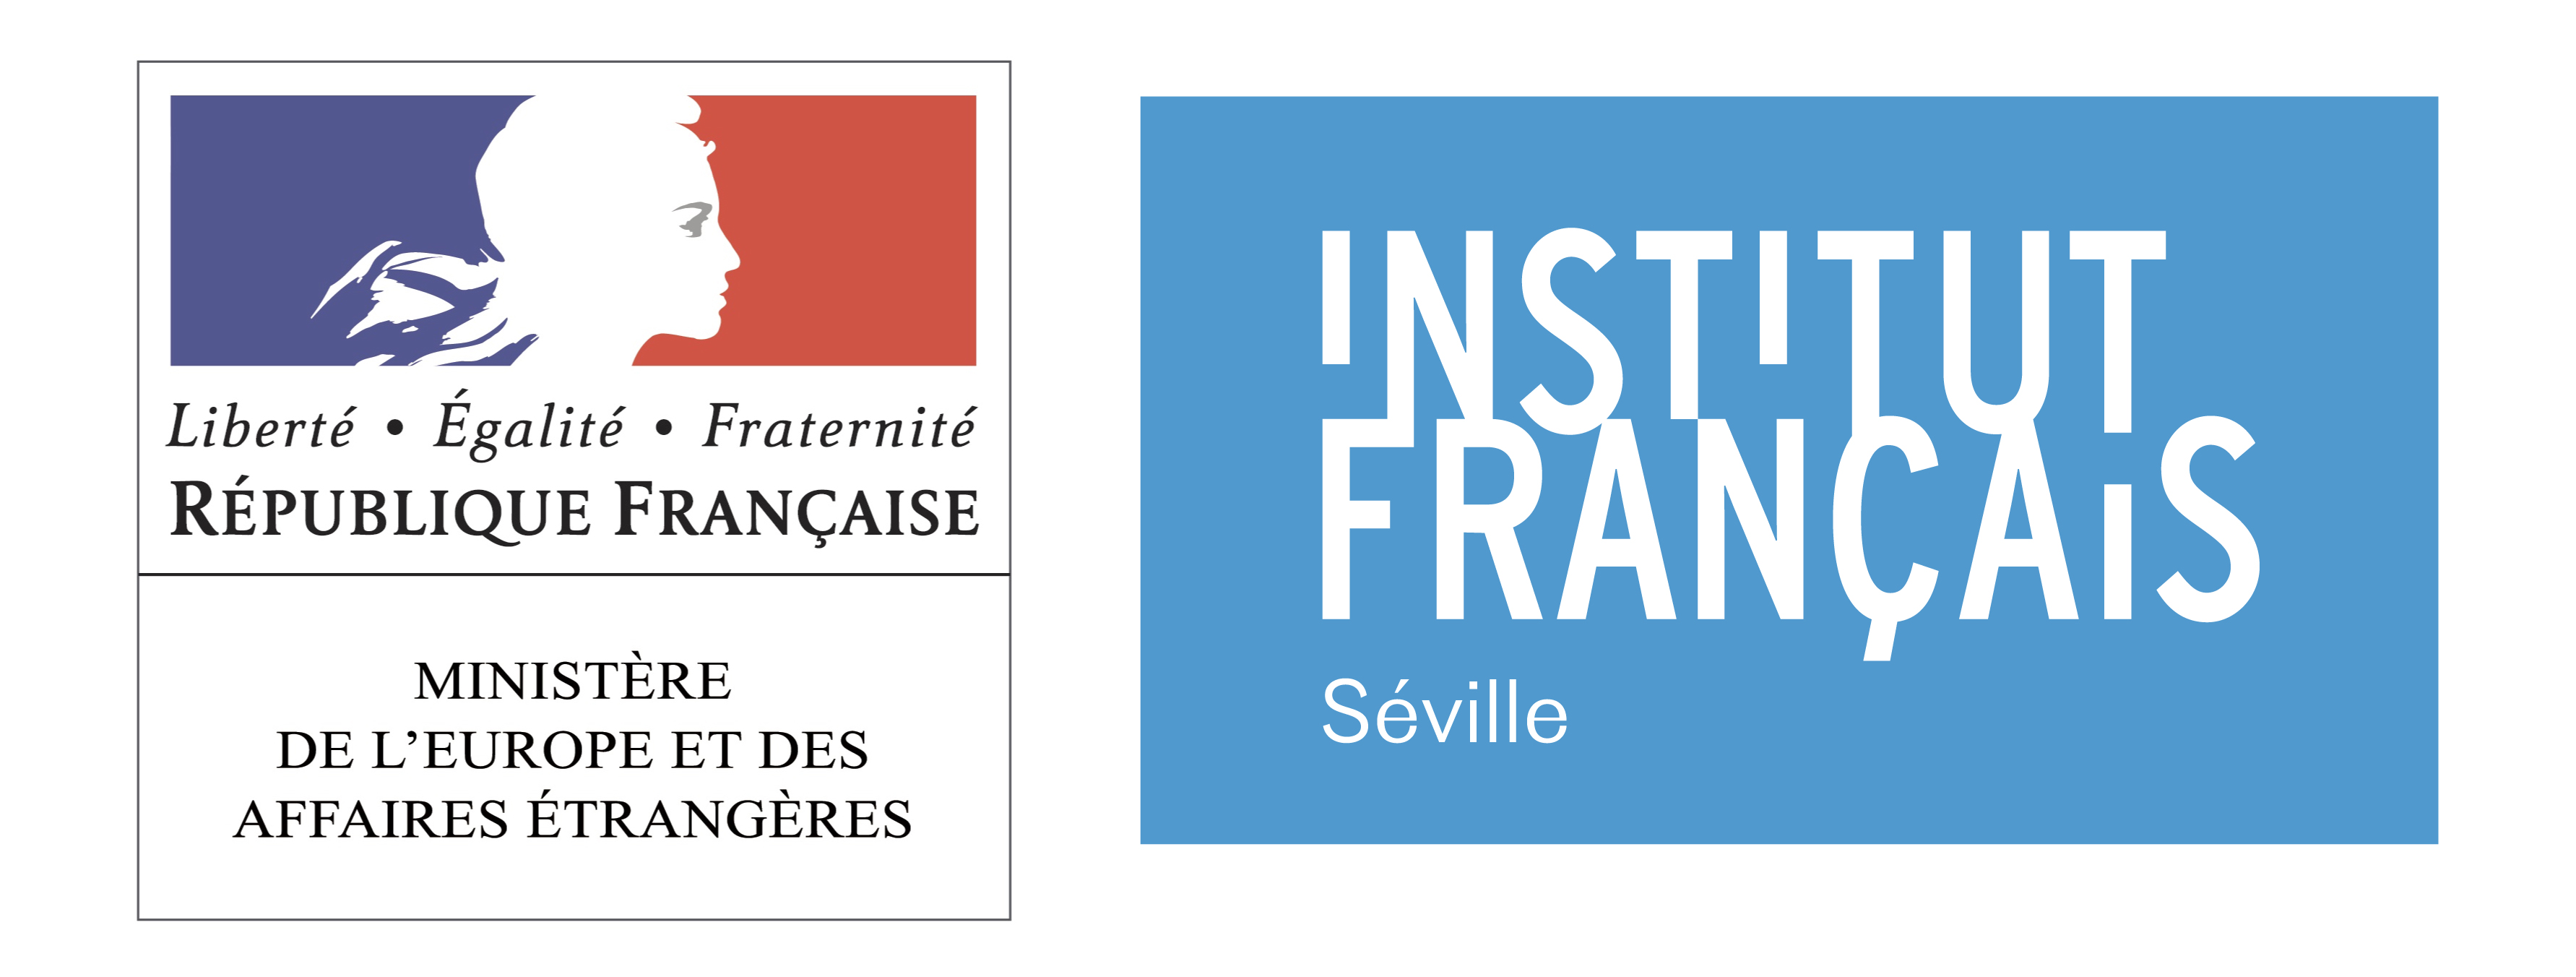 Instituto Frances